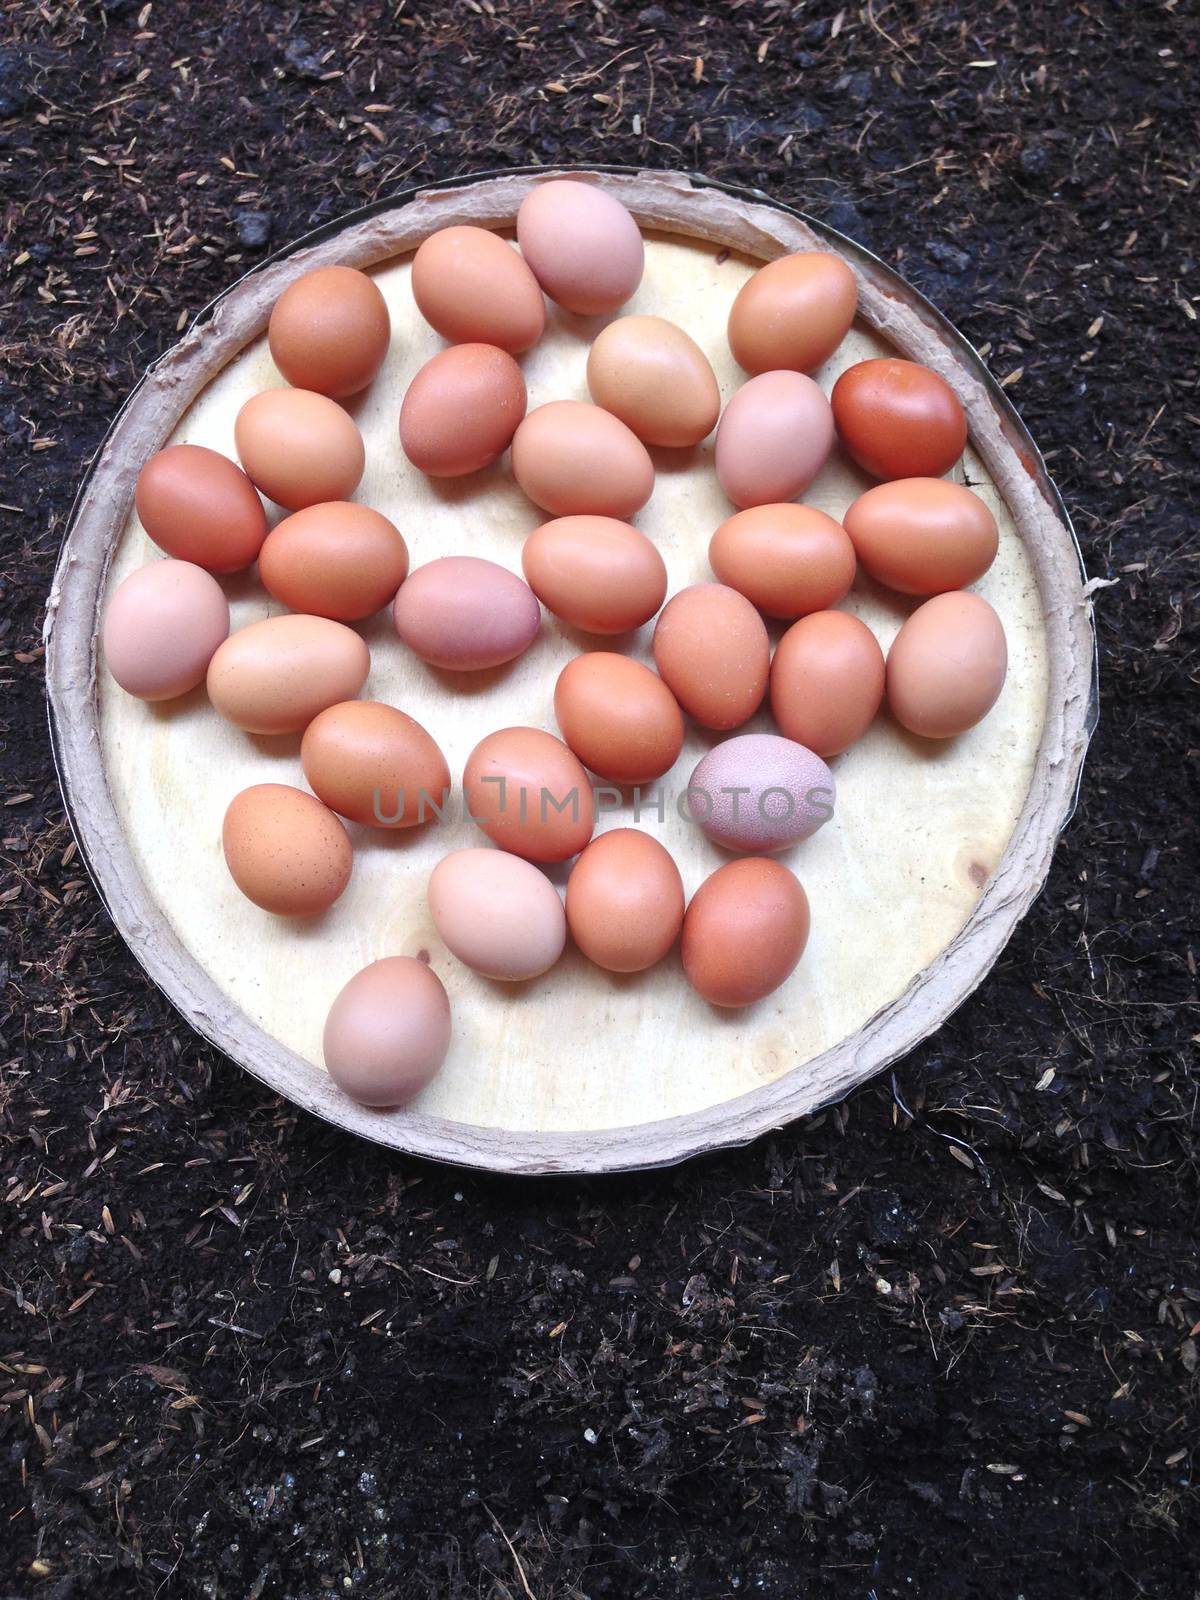 Eggs on wooden plate on black soil